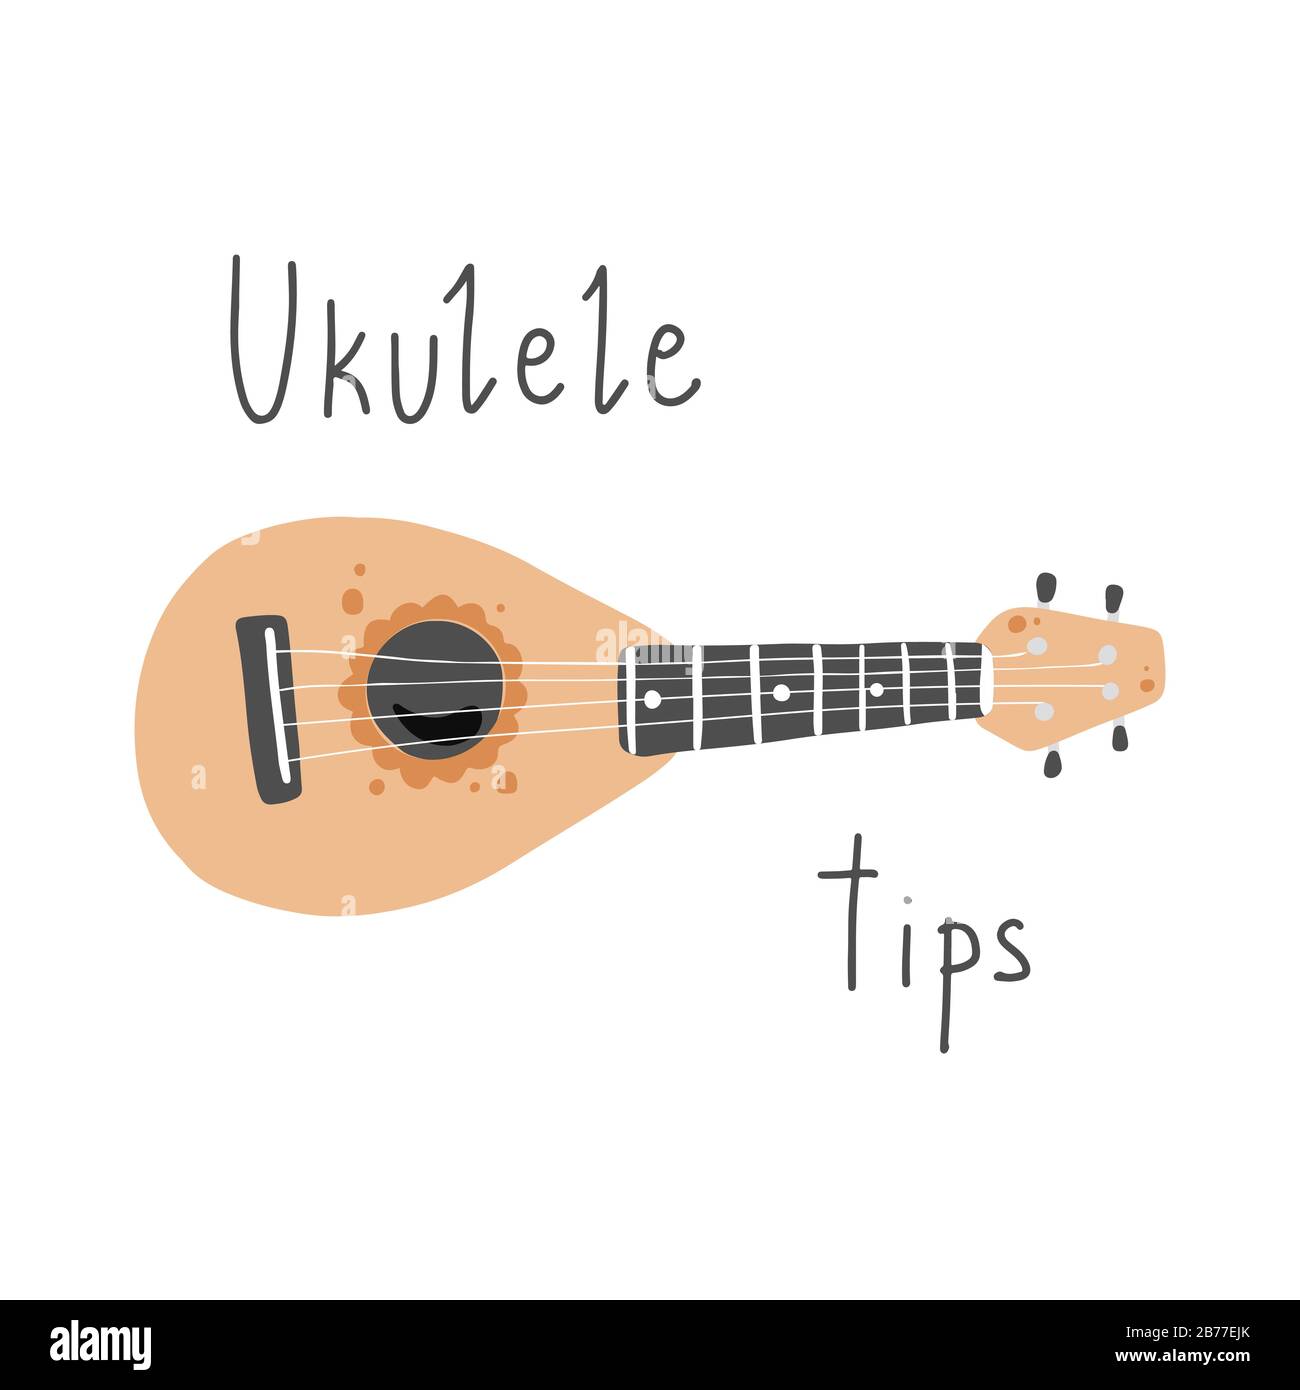 Joli ukulele de dessin animé pour affiche d'été, motif carte avec texte lettrage Ukulele Conseils. Petite guitare, instrument de musique à cordes de style hawaï. Illuataration vectorielle de style simple dessiné à la main. Illustration de Vecteur